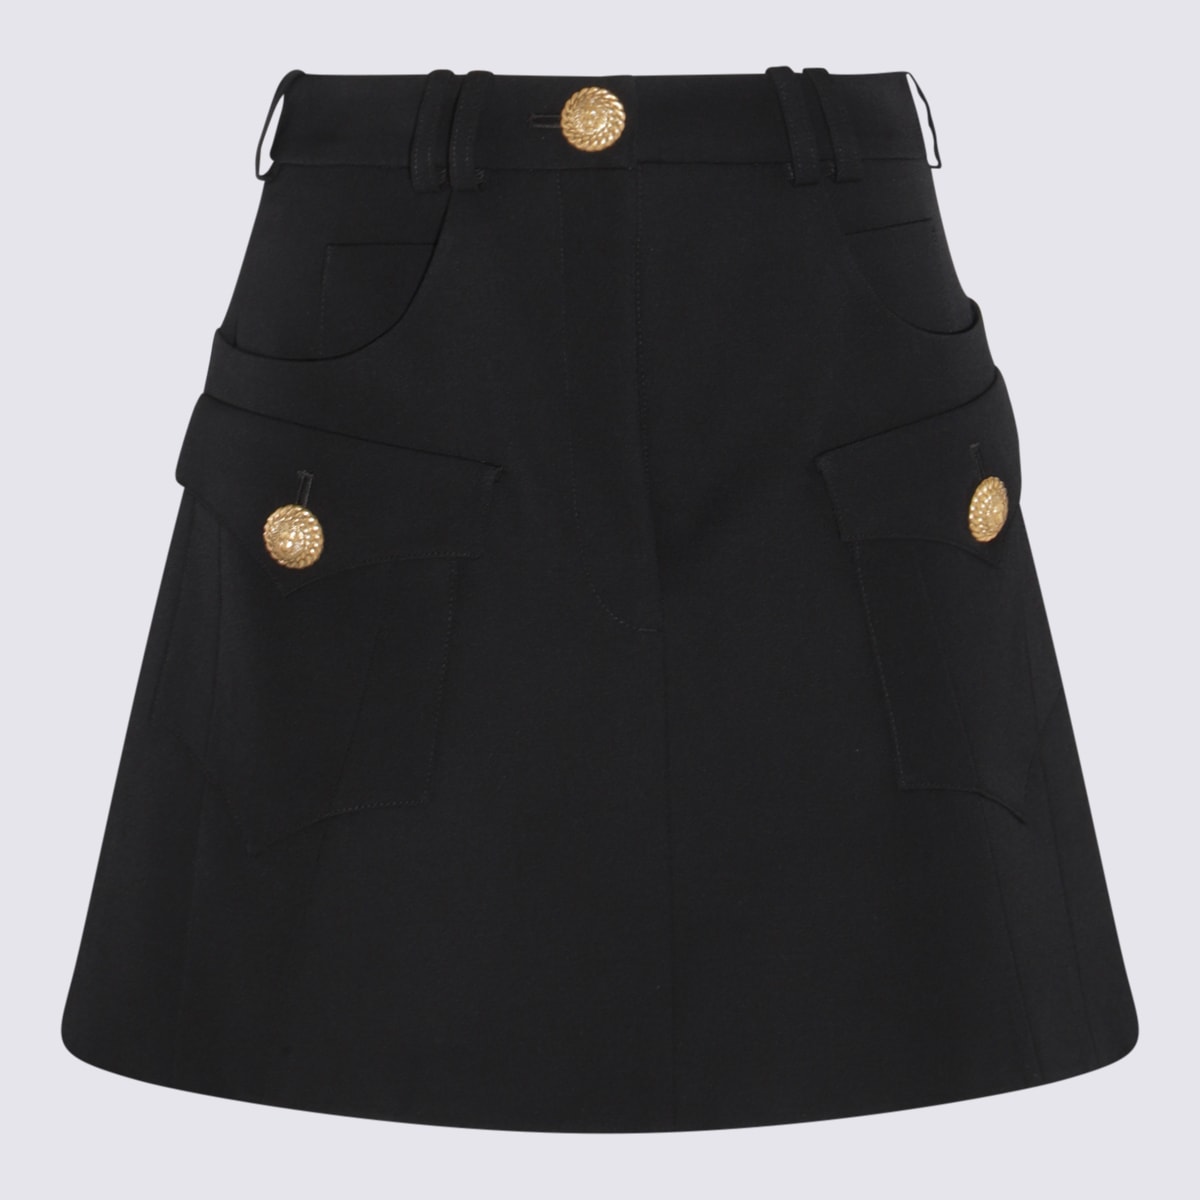 Balmain Black Cotton-viscose Blend Skirt